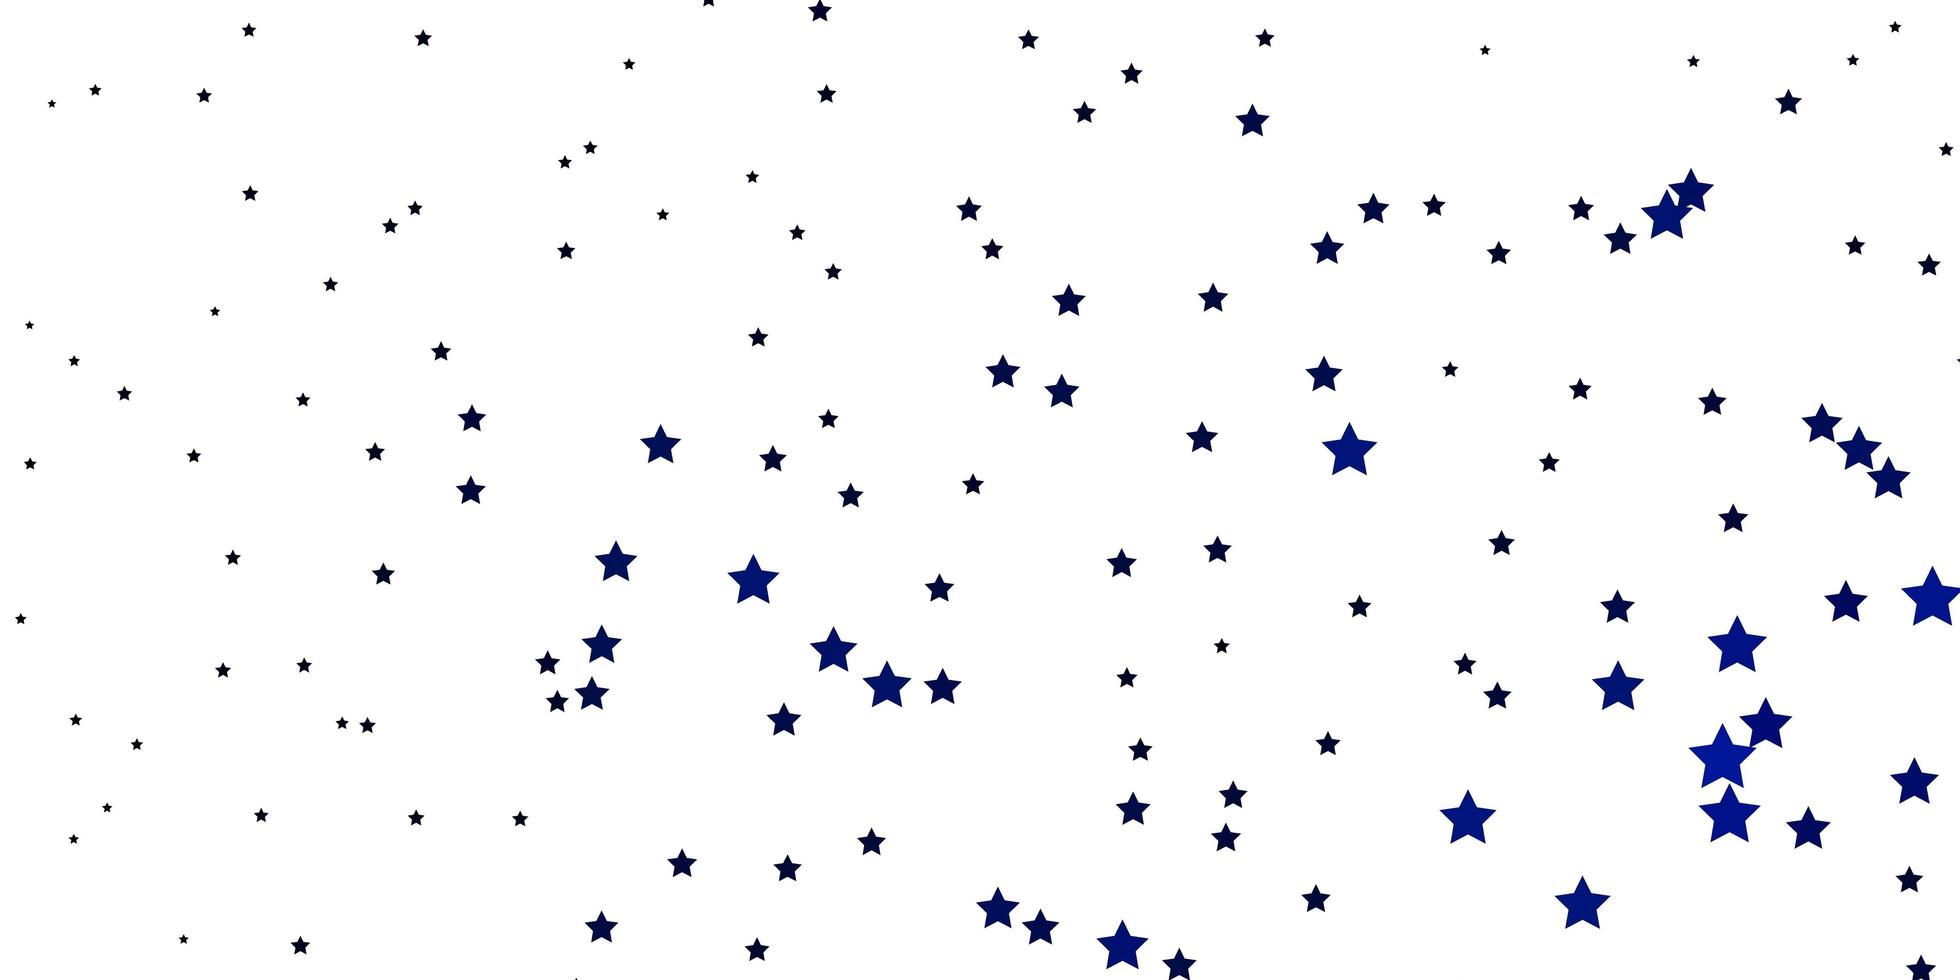 fundo vector azul escuro com estrelas coloridas.